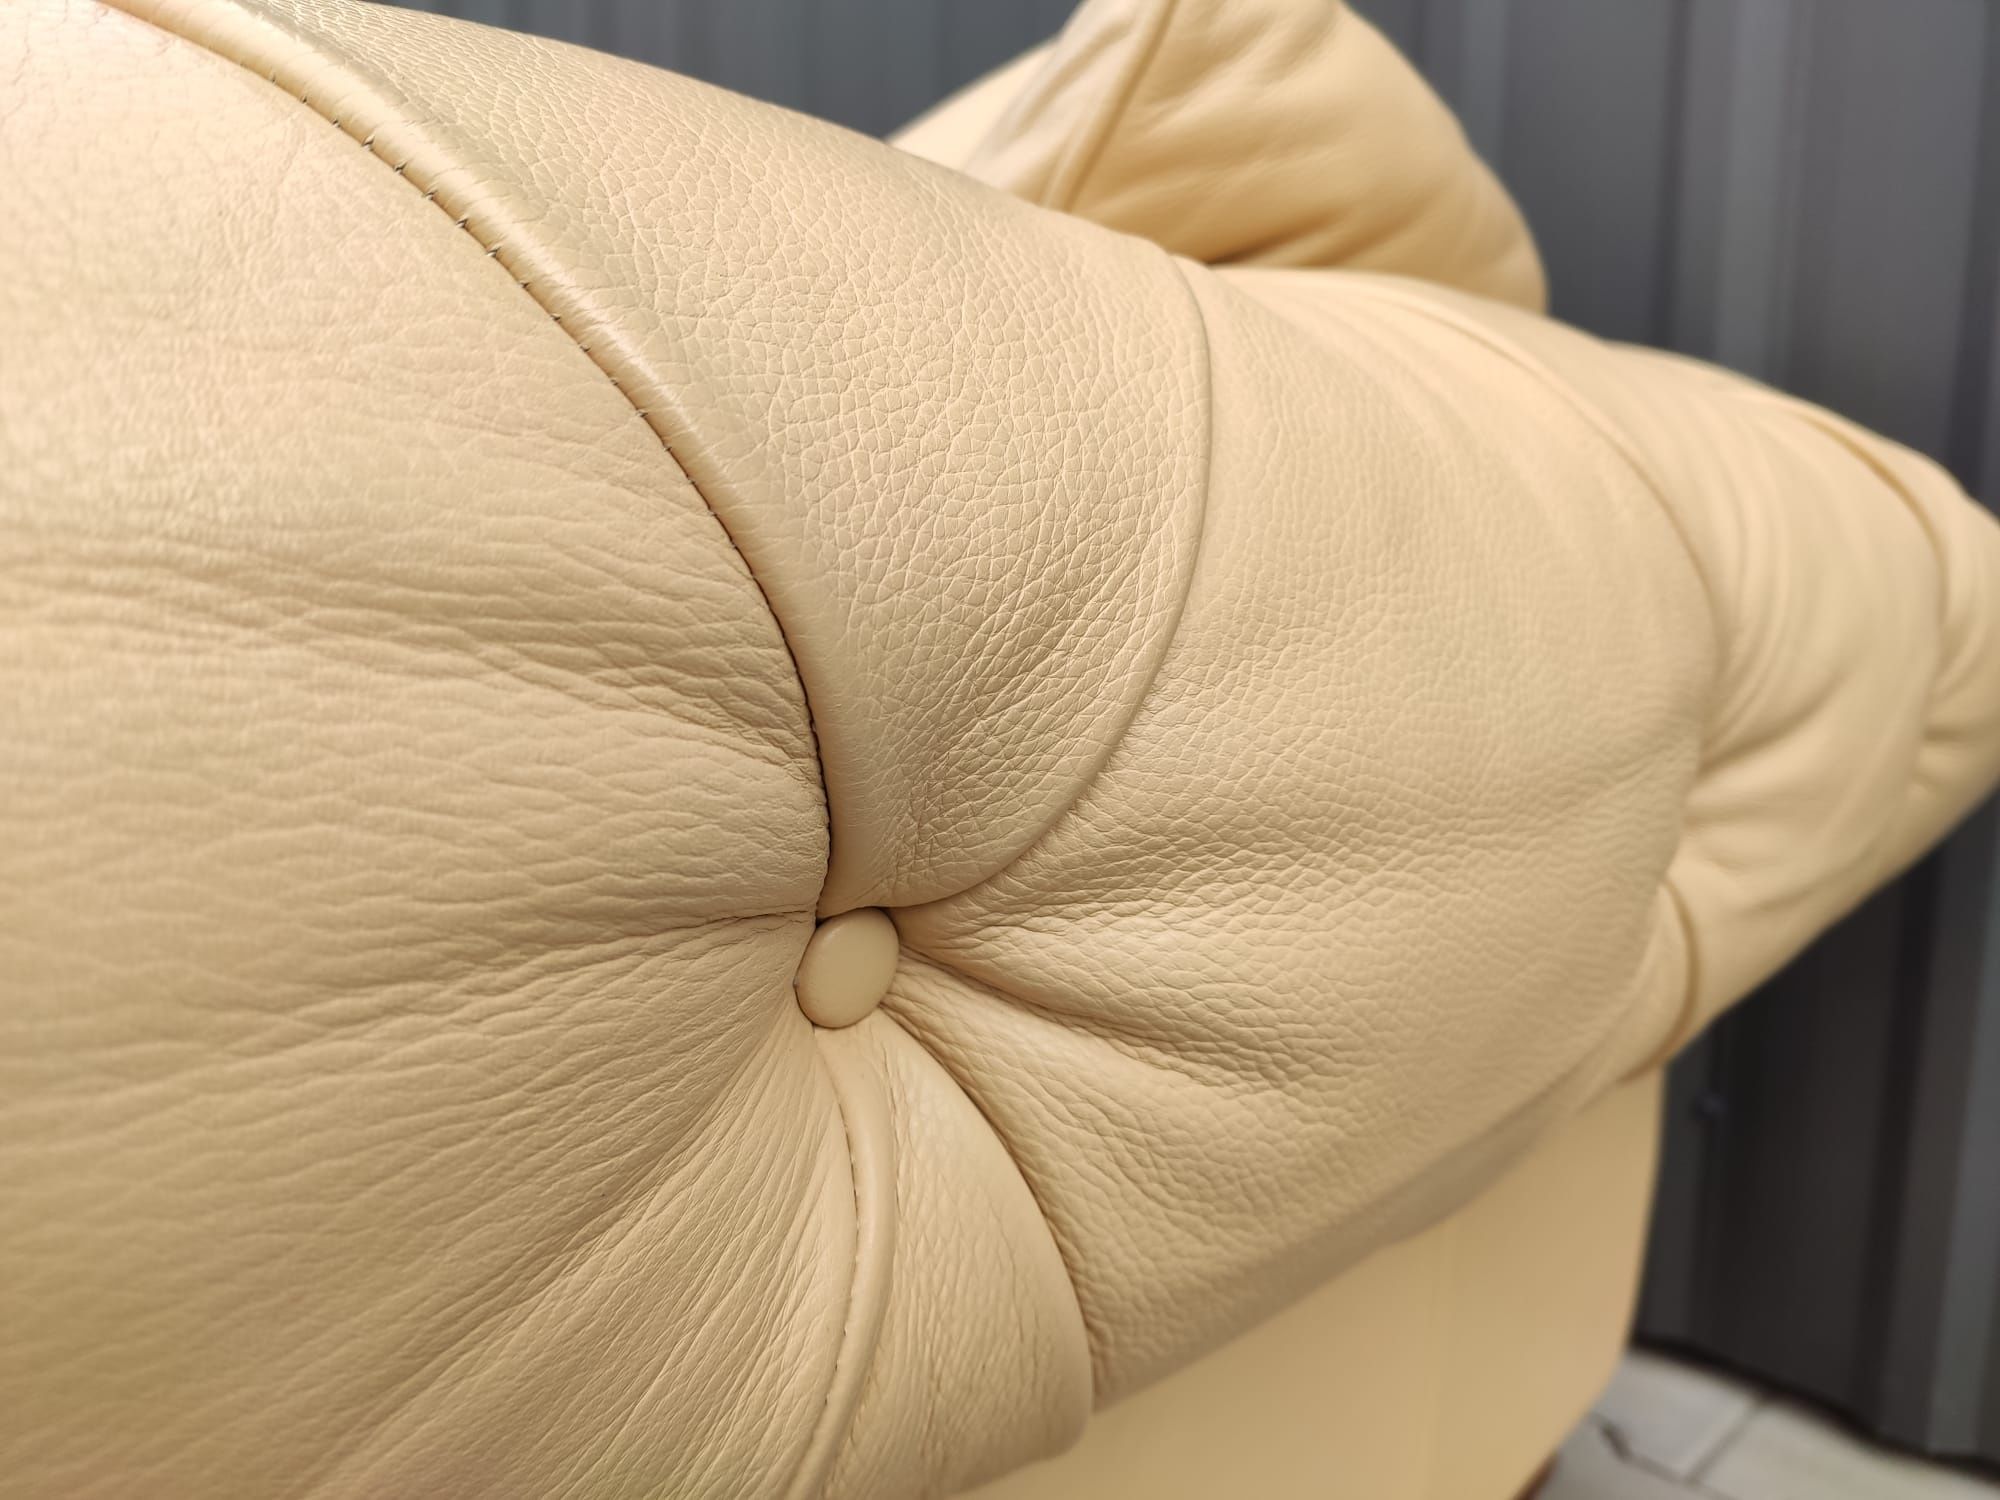 Sofa 3-os.+fotel Chesterfield Chippendale-100% skóra naturalna!OKAZJA